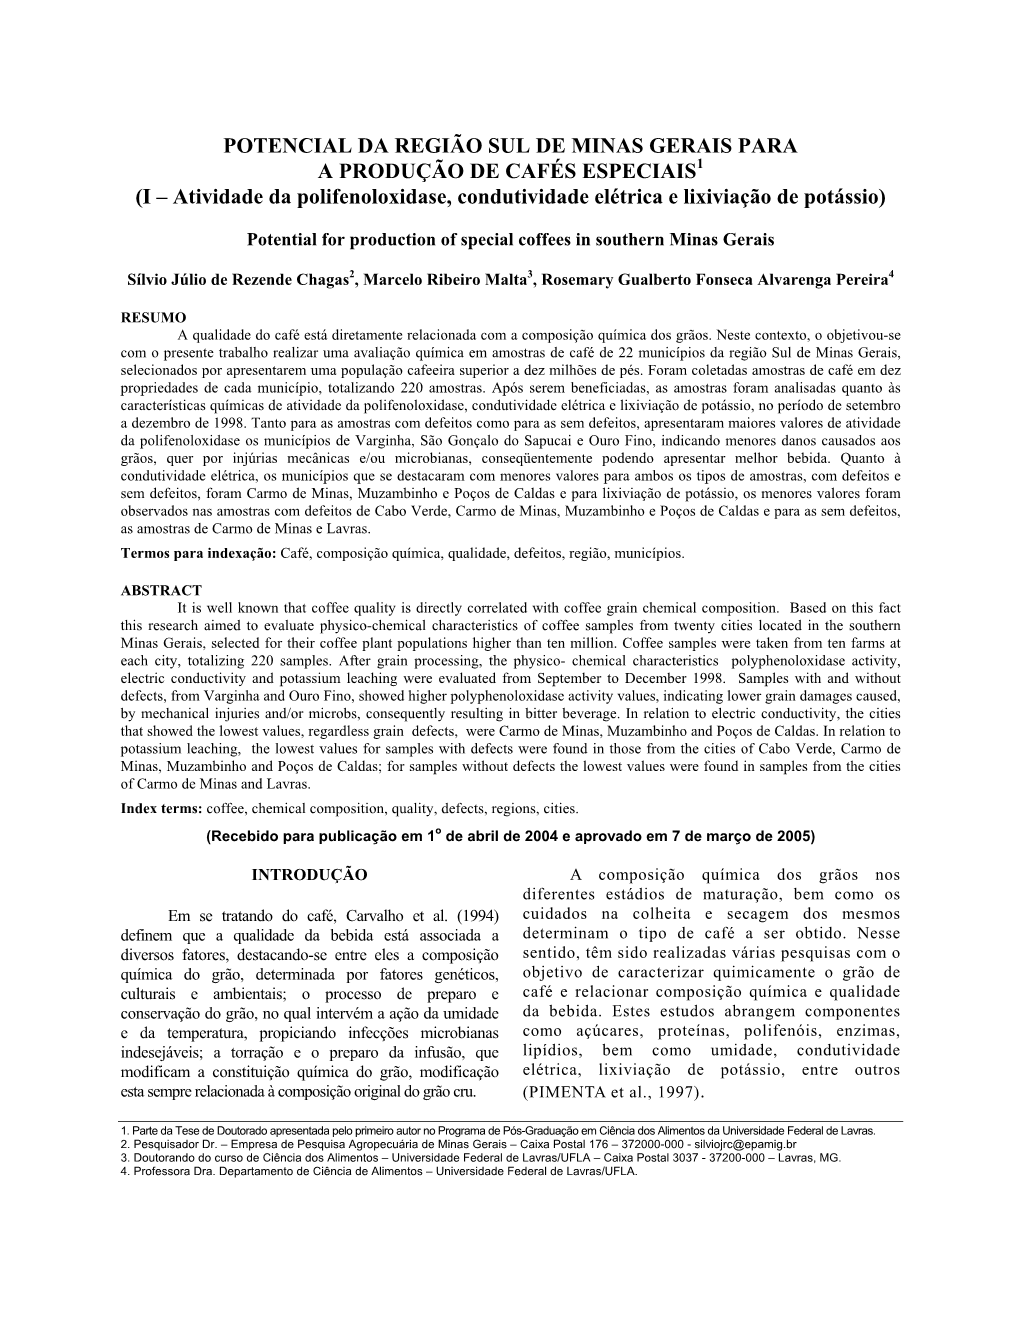 POTENCIAL DA REGIÃO SUL DE MINAS GERAIS PARA a PRODUÇÃO DE CAFÉS ESPECIAIS1 (I – Atividade Da Polifenoloxidase, Condutividade Elétrica E Lixiviação De Potássio)